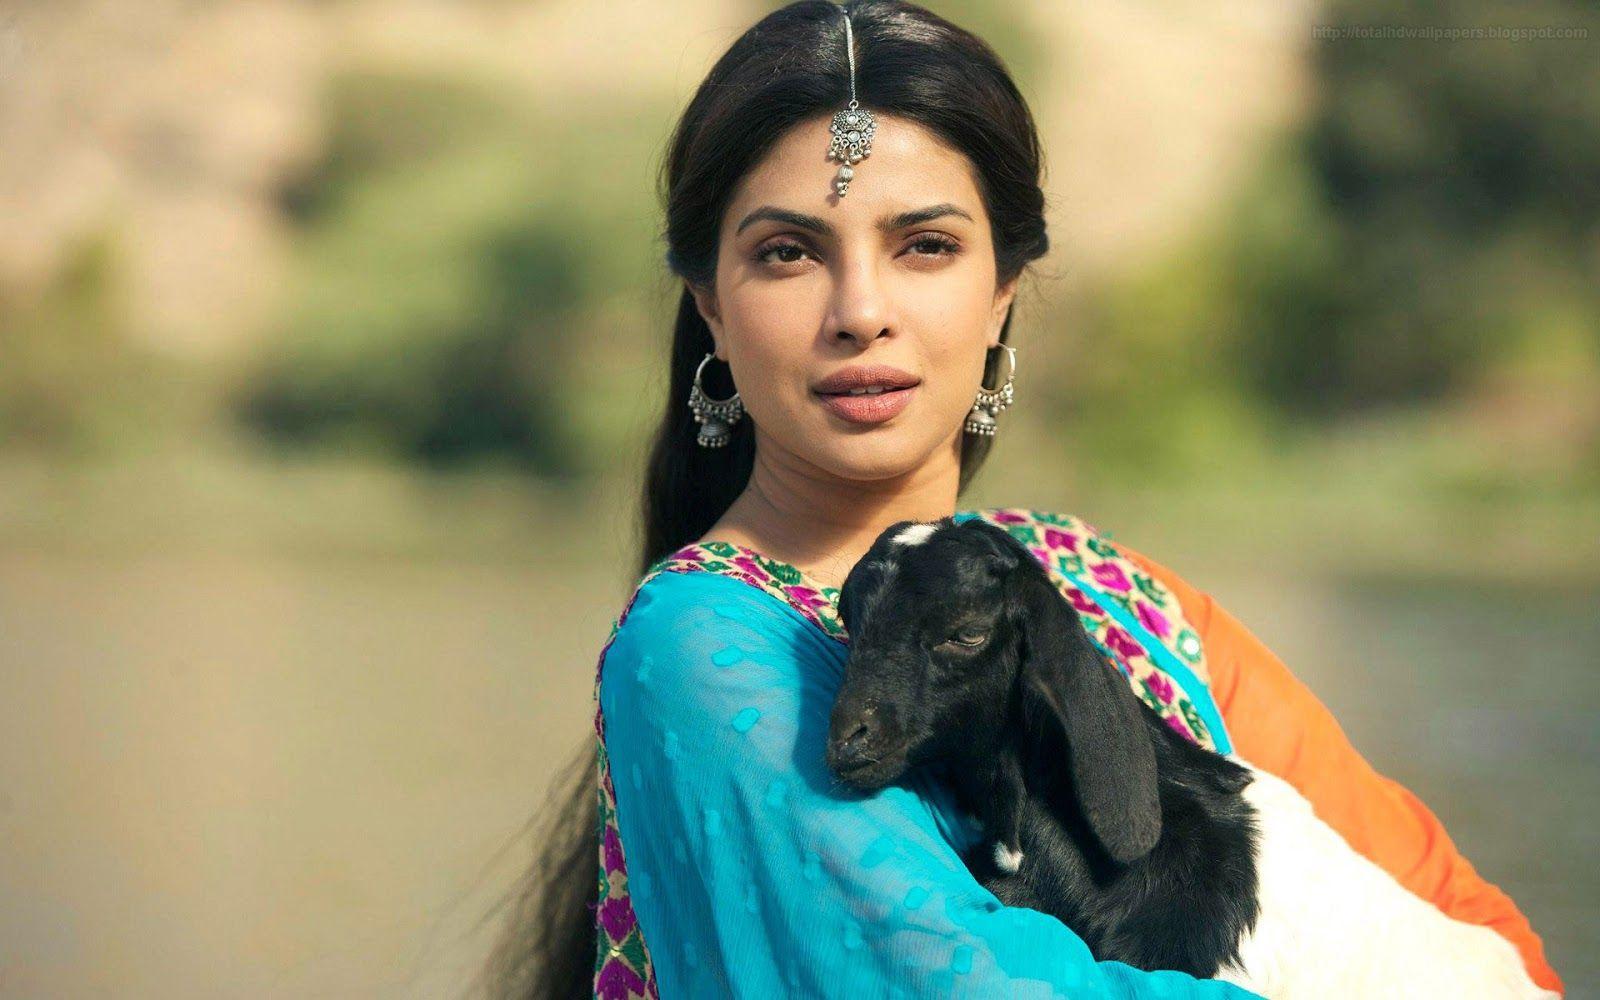 Bollywood HD wallpaper 1080p: Bollywood Actress HD Wallpaper 1080p